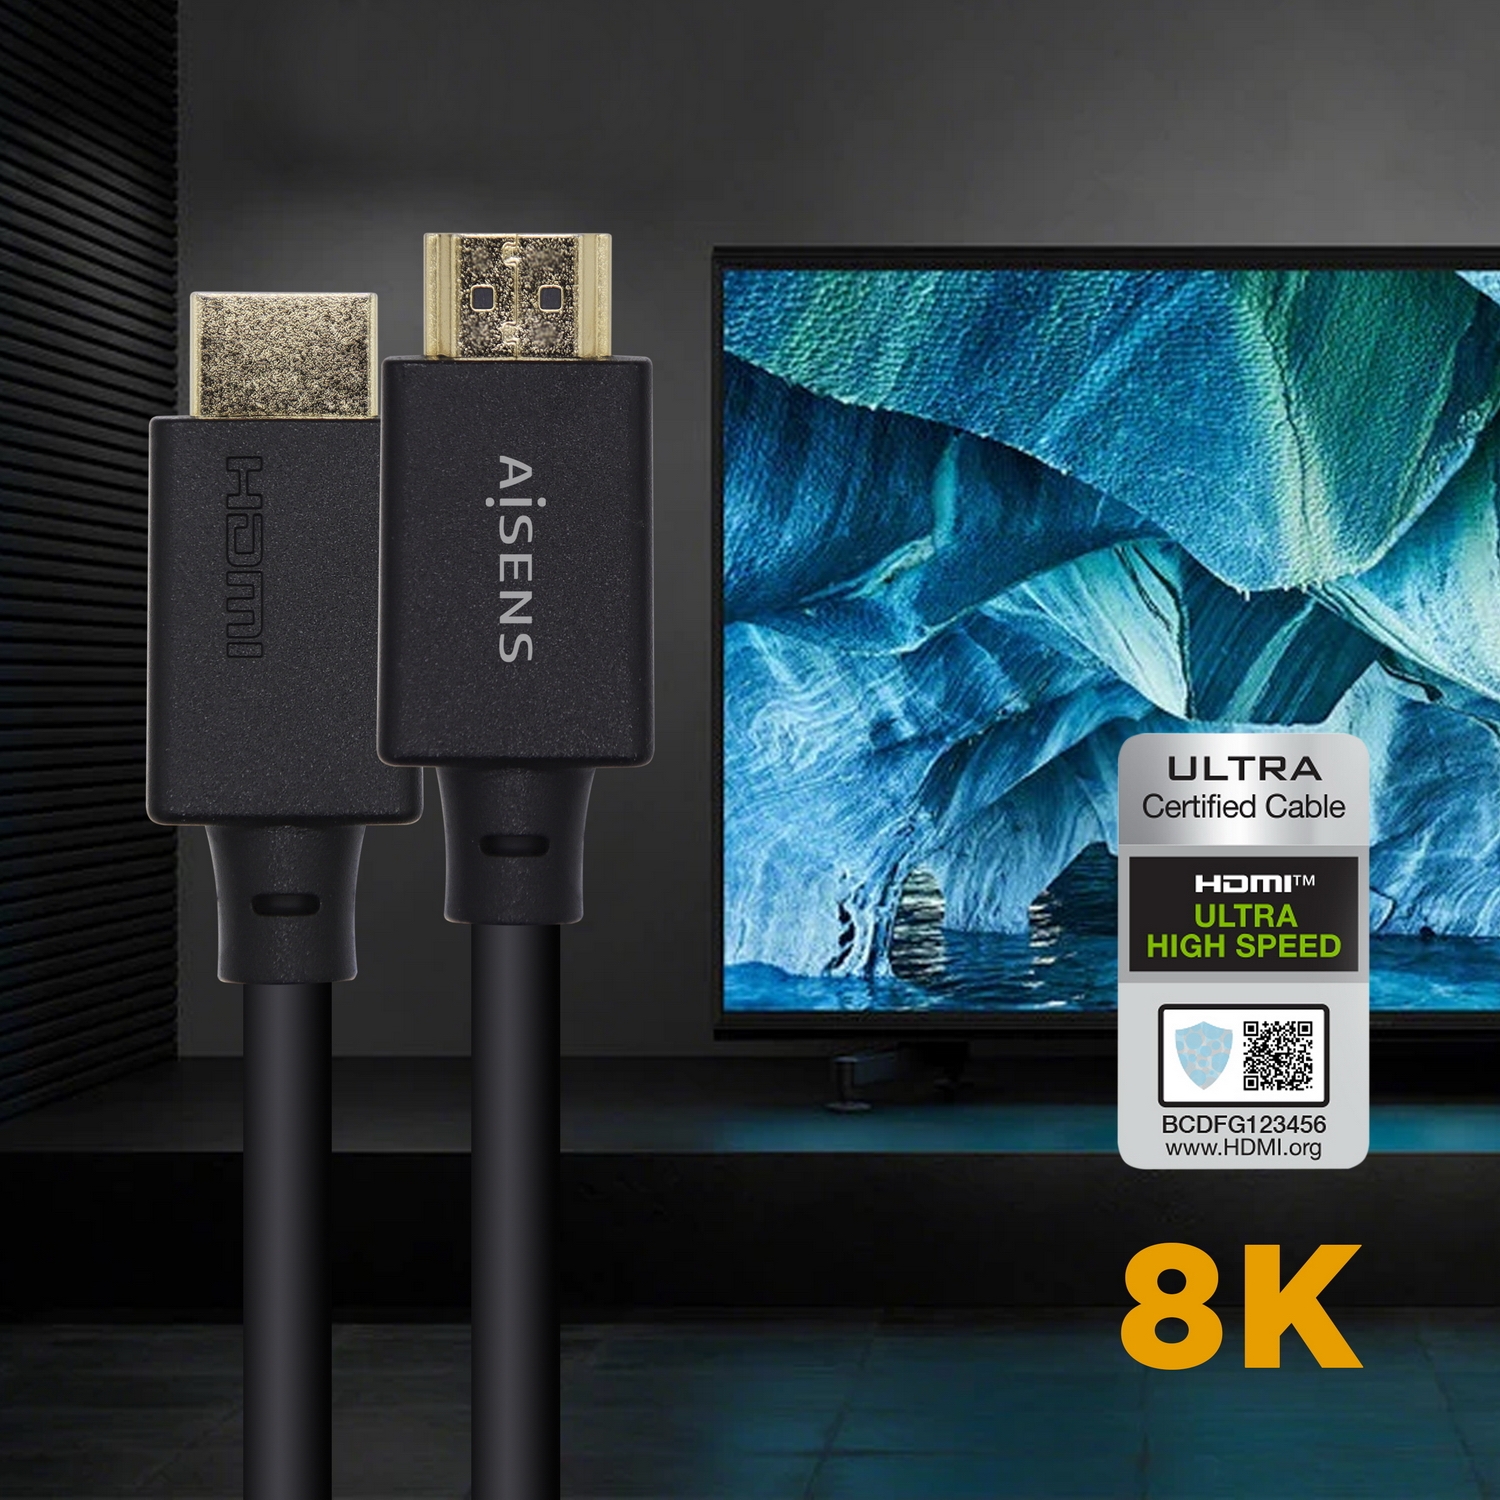 Cable Adaptador HDMI Smart Tv 3 Mts. - Impoluz  Tiendas Electrónica,  Seguridad Y Más, Contra Entrega.